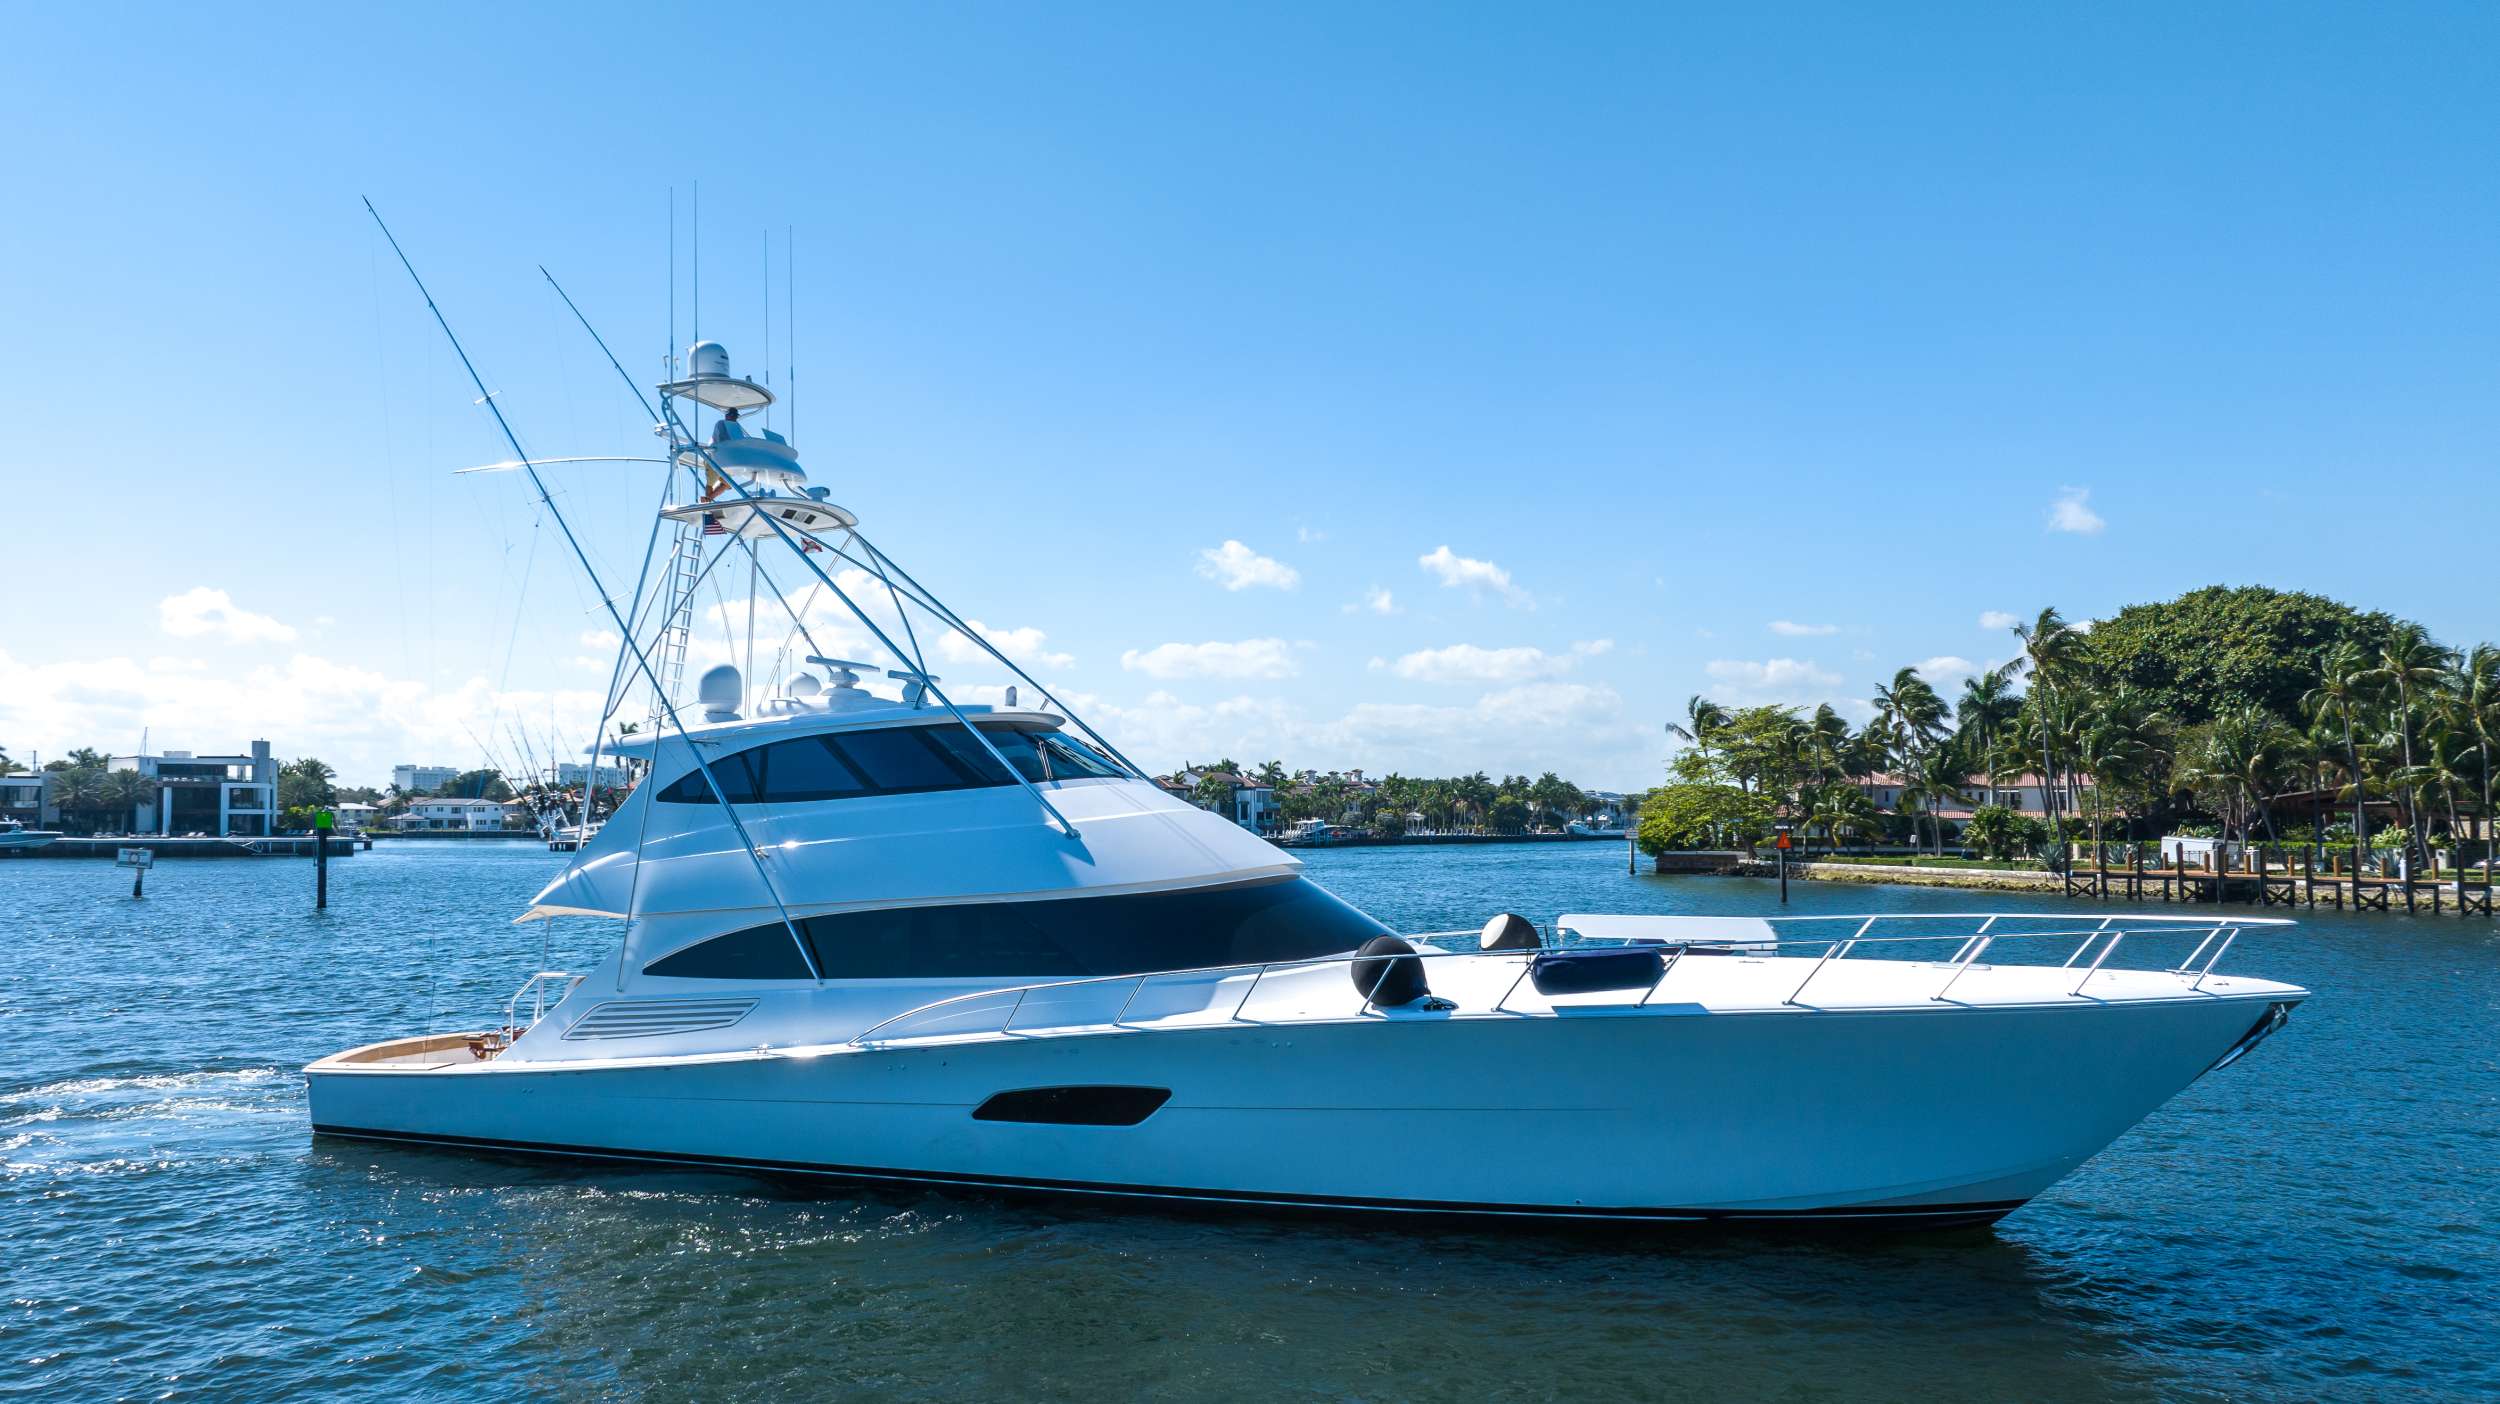 Astrikos - Luxury yacht charter Bahamas & Boat hire in Florida & Bahamas 1